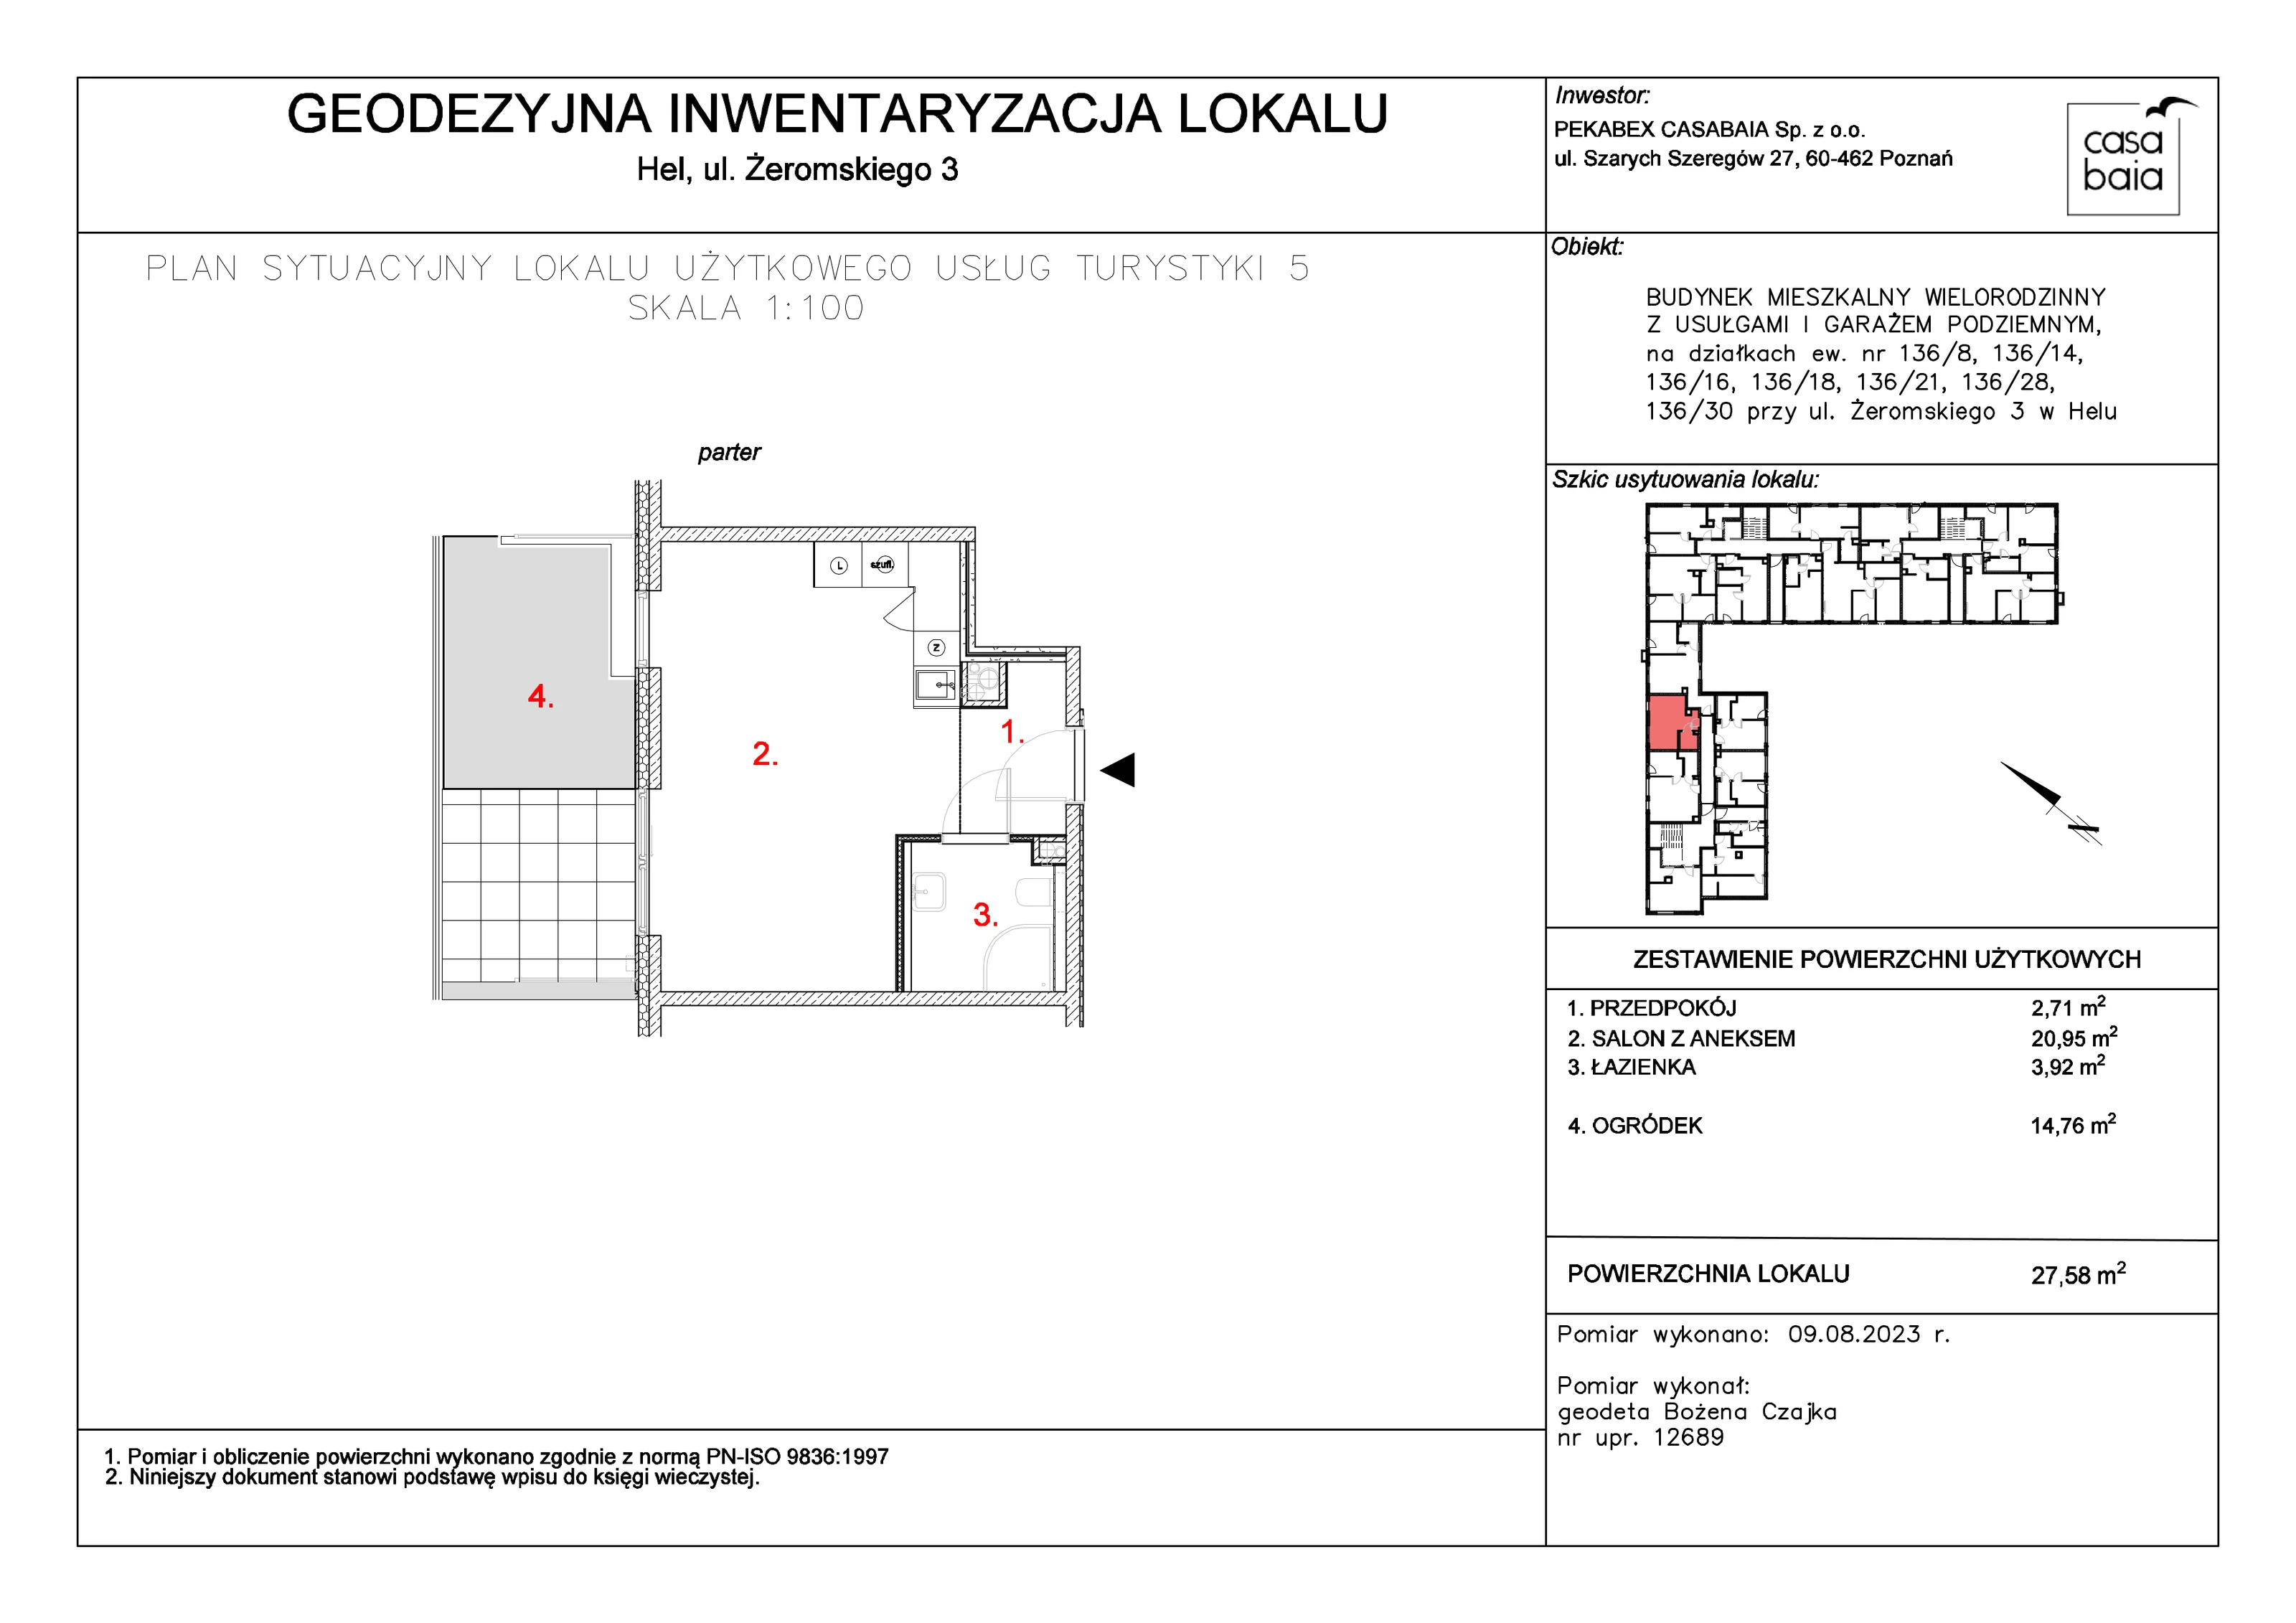 Mieszkanie 27,58 m², parter, oferta nr L1, CASA BAIA, Hel, ul. Stefana Żeromskiego 3